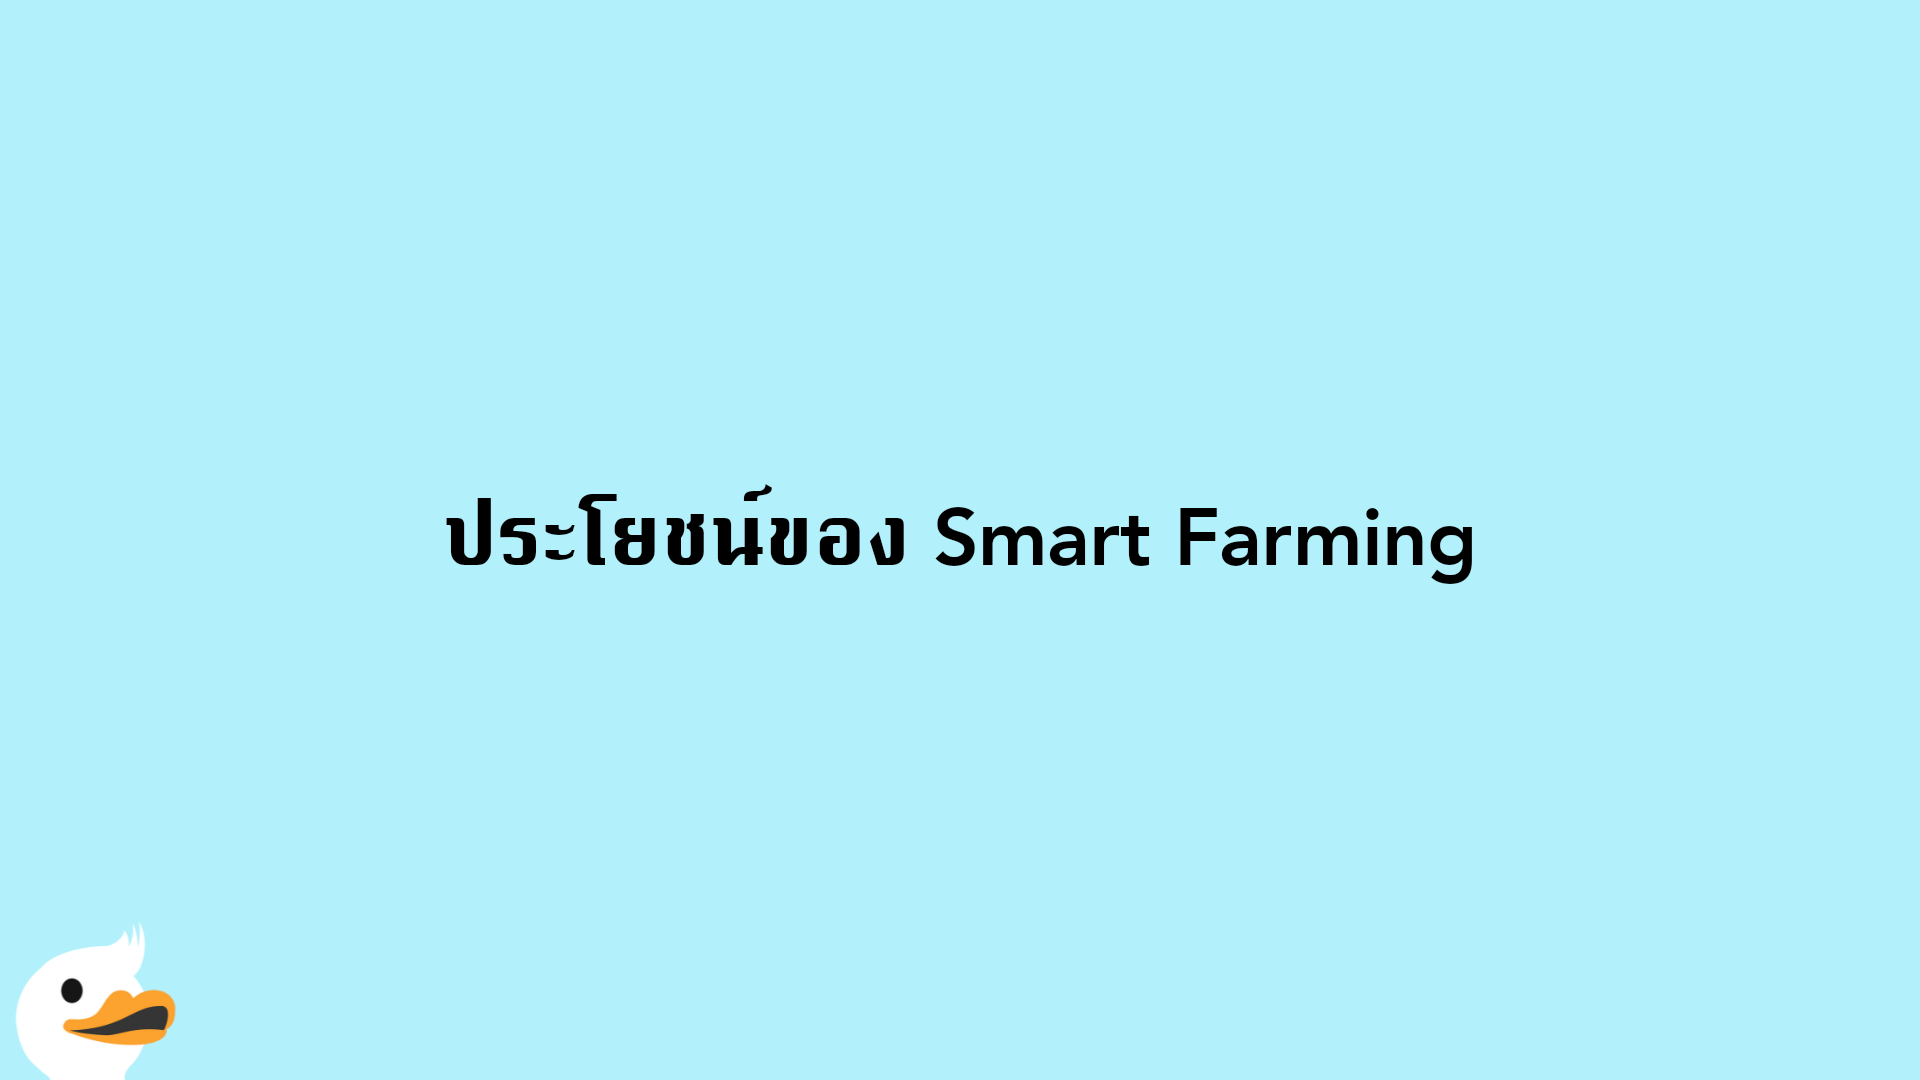 ประโยชน์ของ Smart Farming